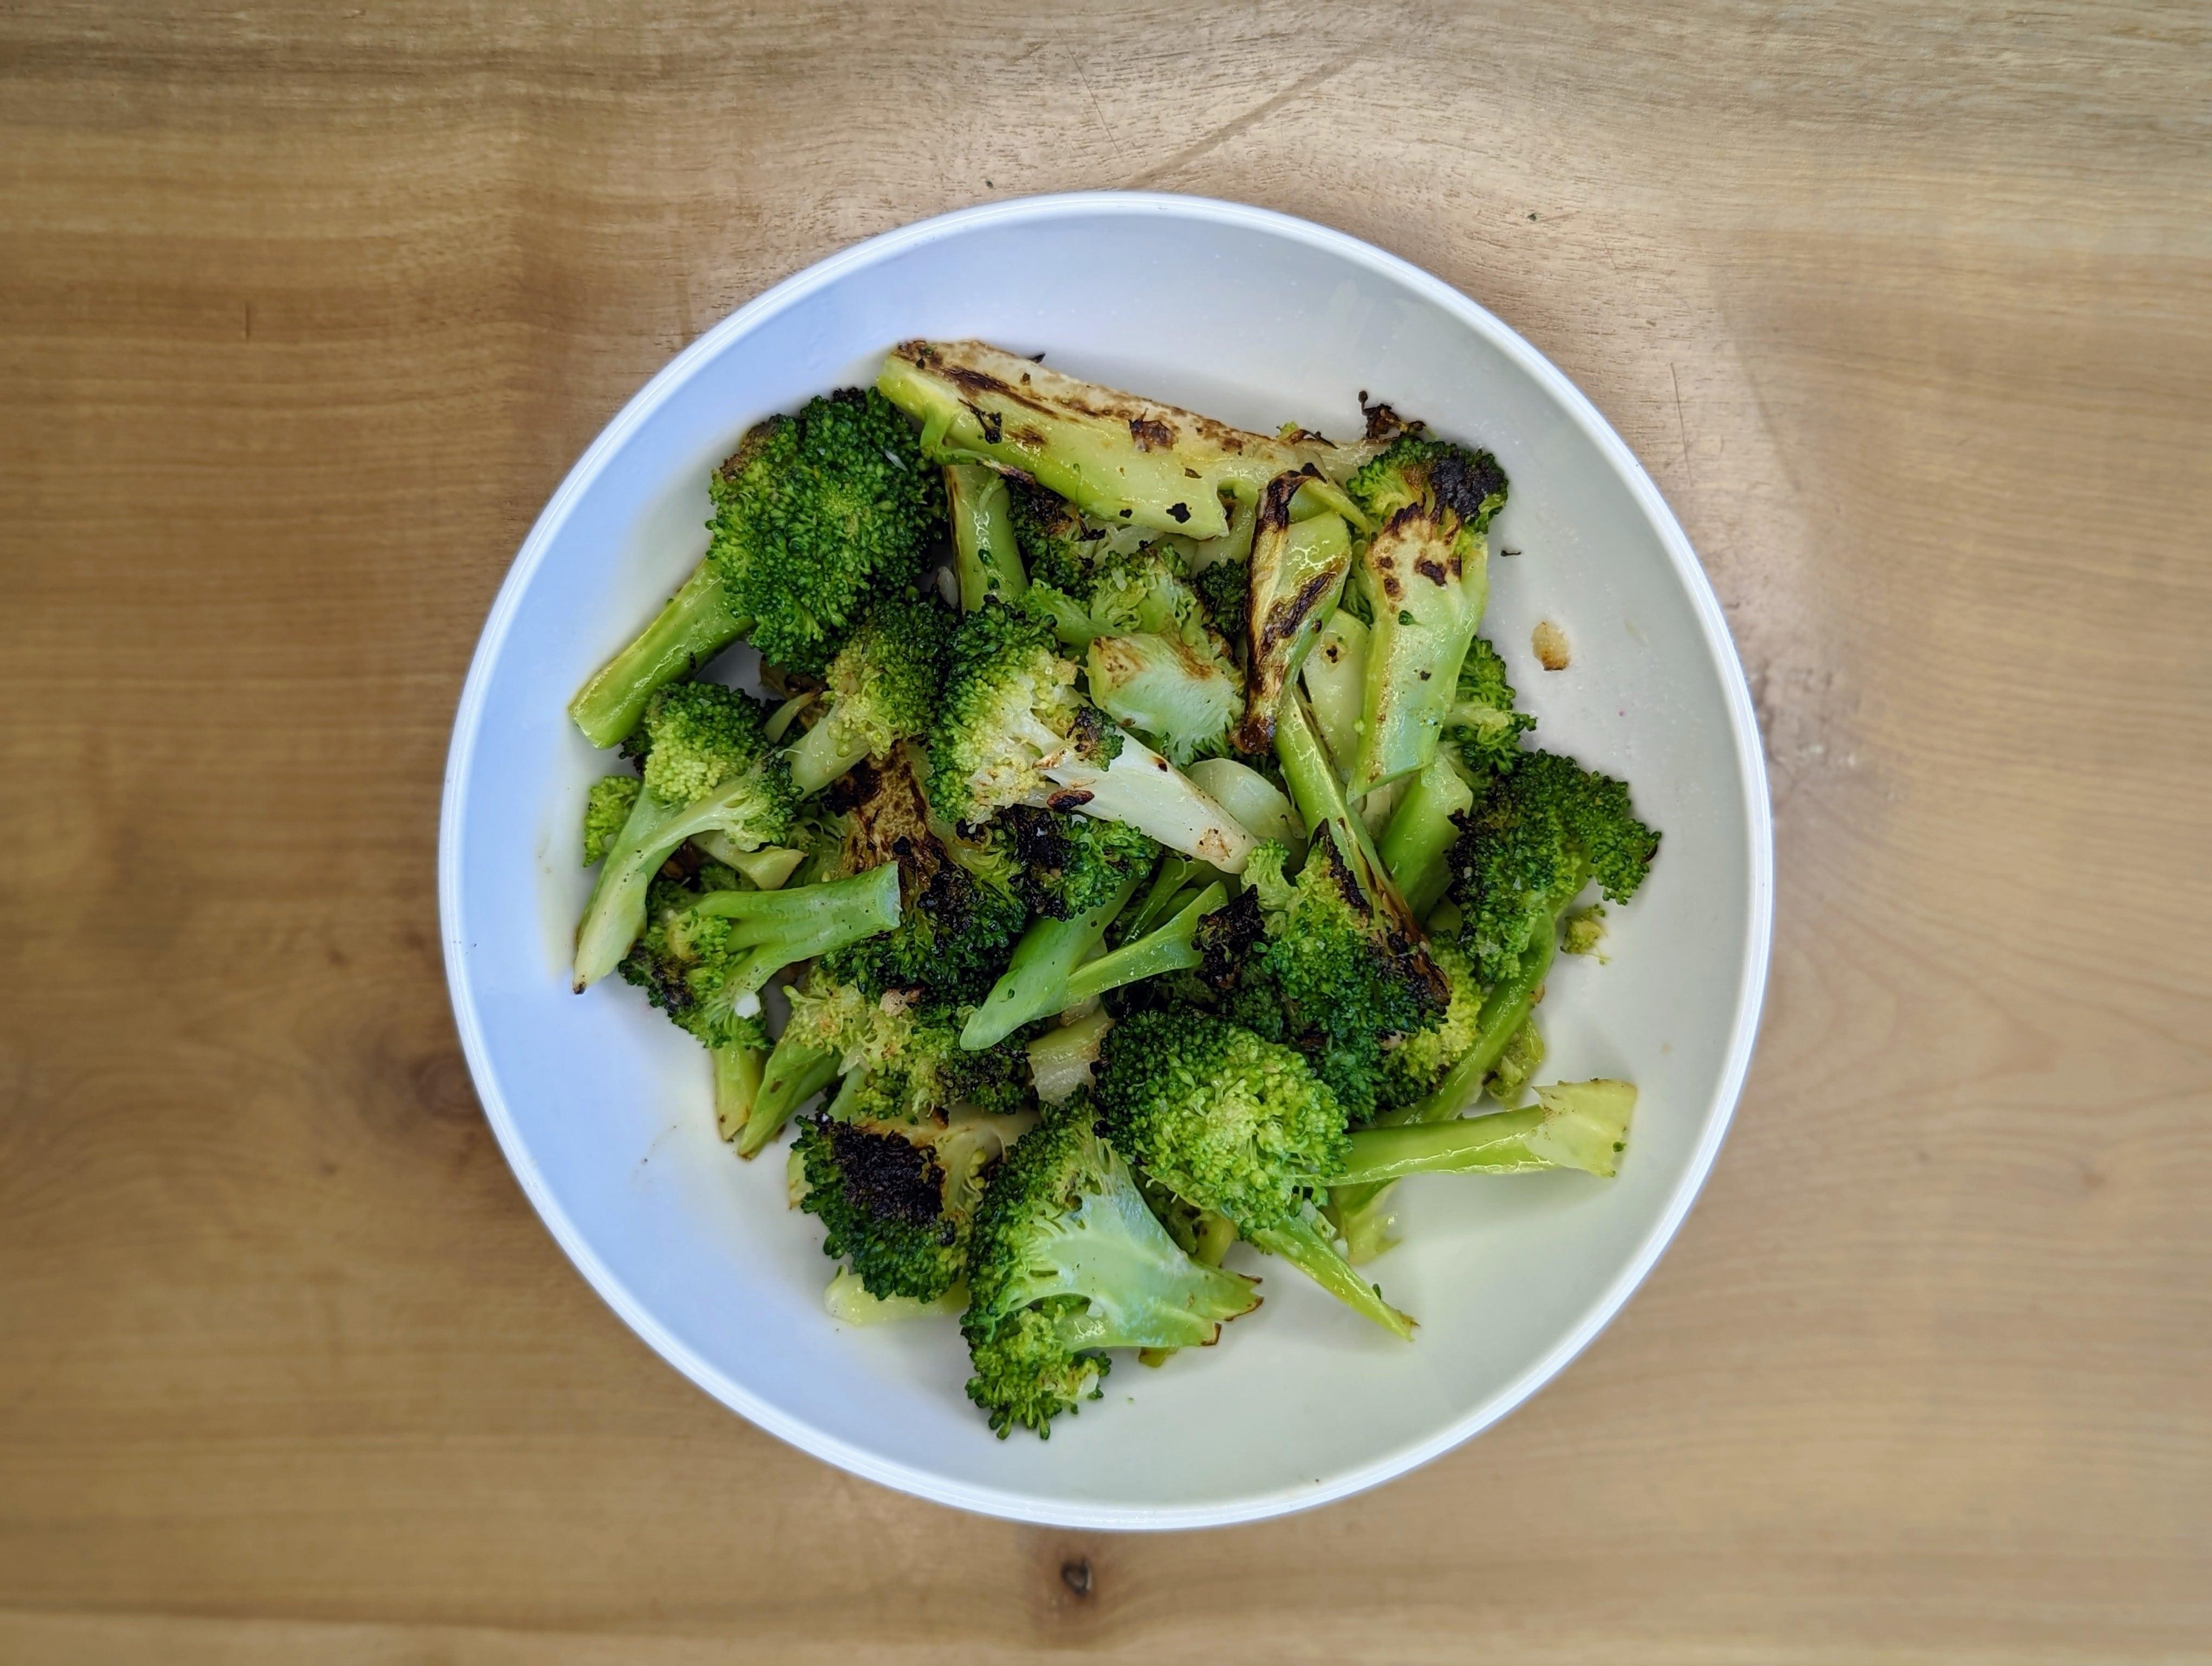 Side: Garlic Sautéed Broccoli